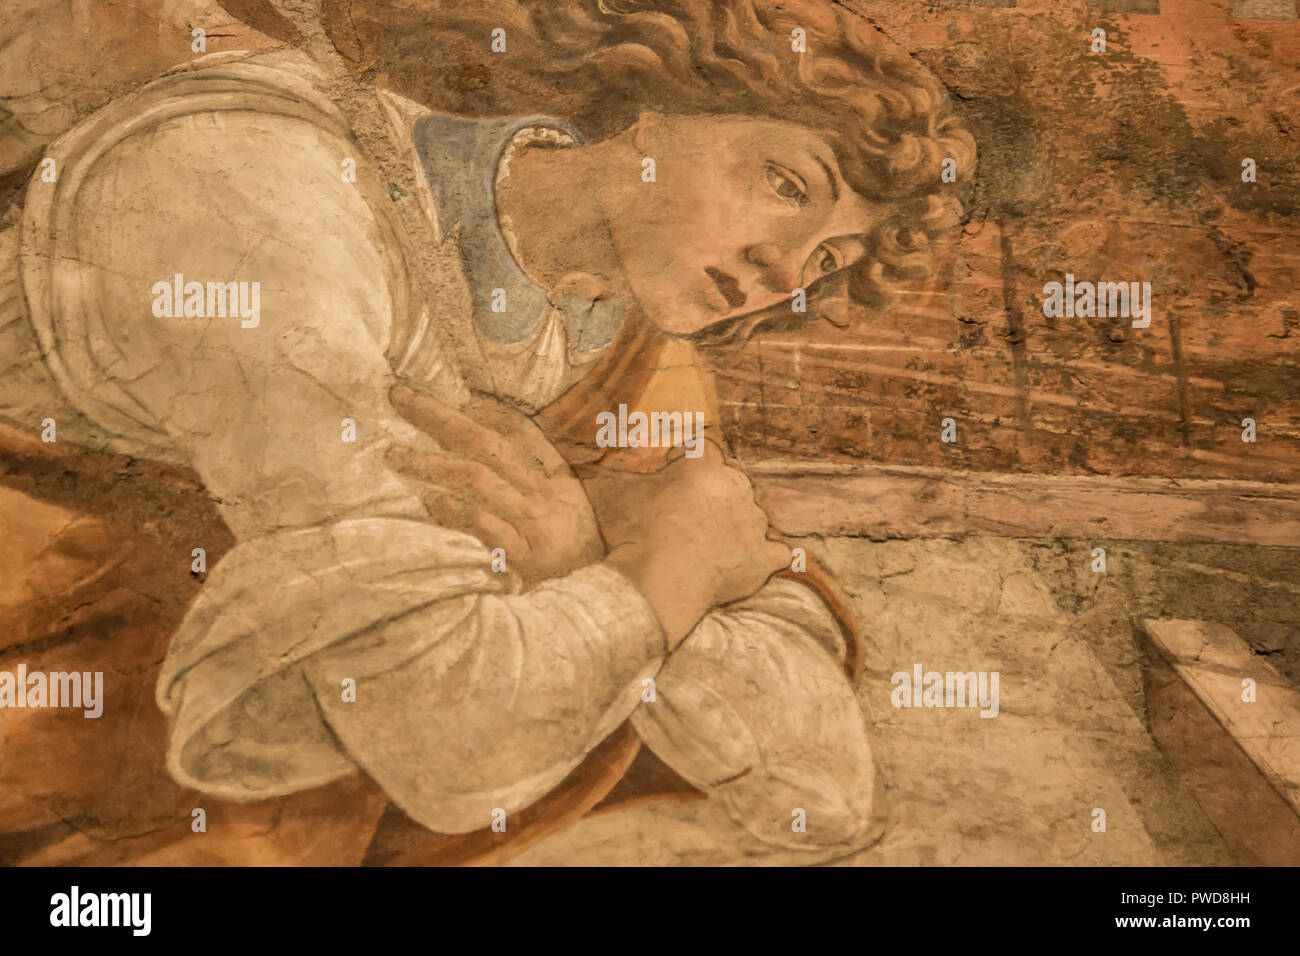 Eine Nahaufnahme des Gesichts des Engel in Boltticelli der Verkündigung in den Uffizien in Florenz, Italien. Ehemals ein Fresko entfernt wurde und auf Leinwand montiert. Stockfoto